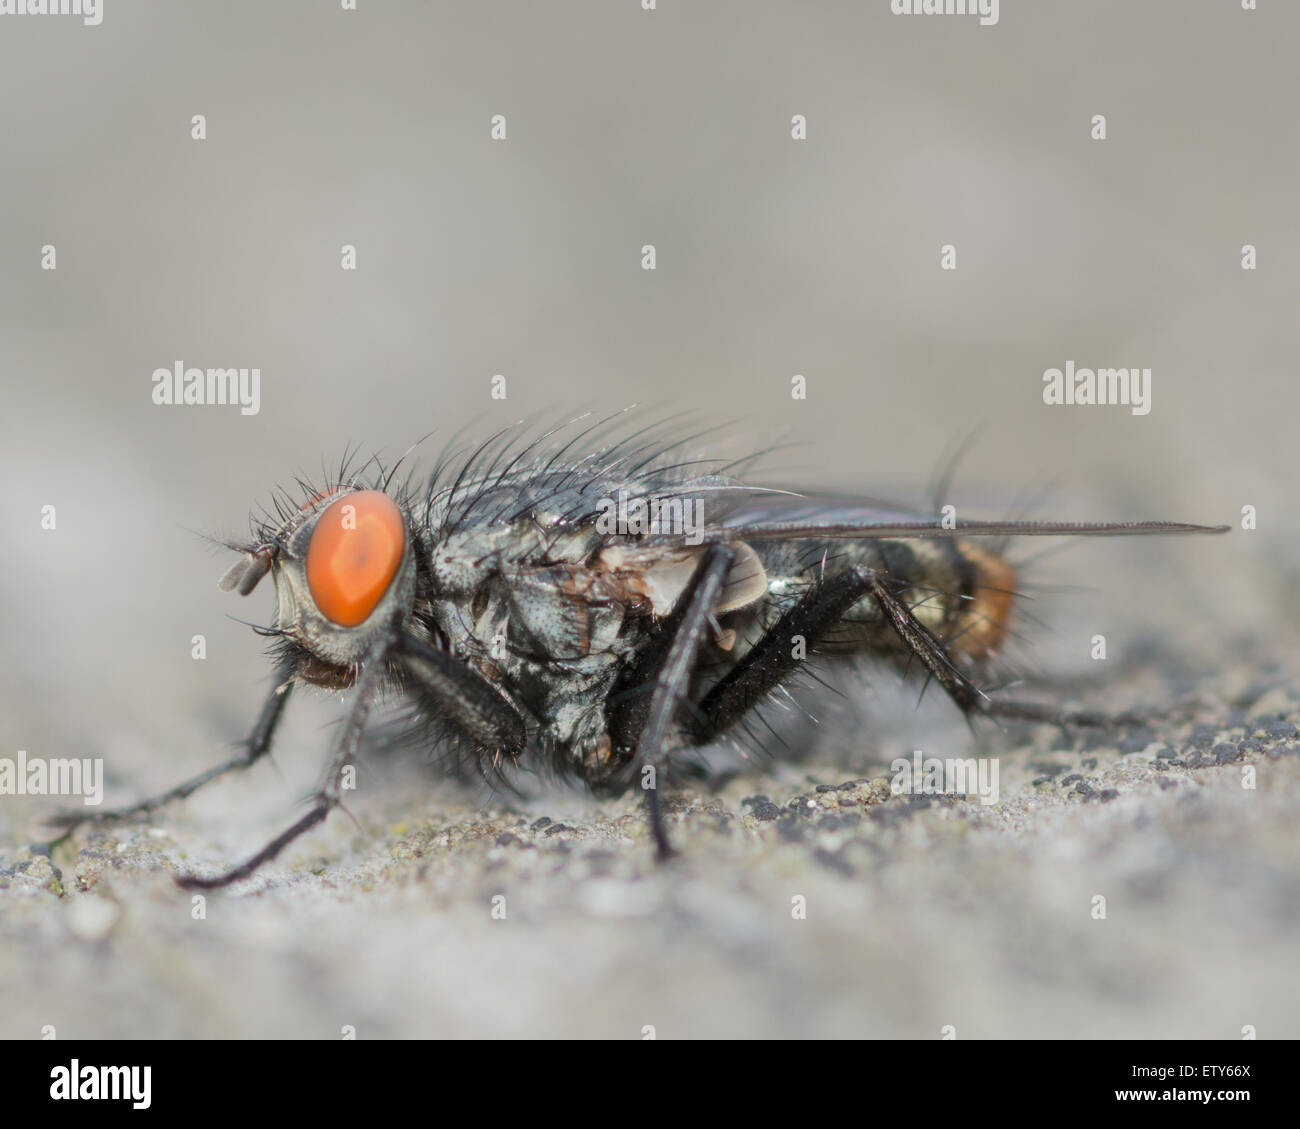 Gros plan macro shot d'une mouche perché sur une planche de bois. Banque D'Images